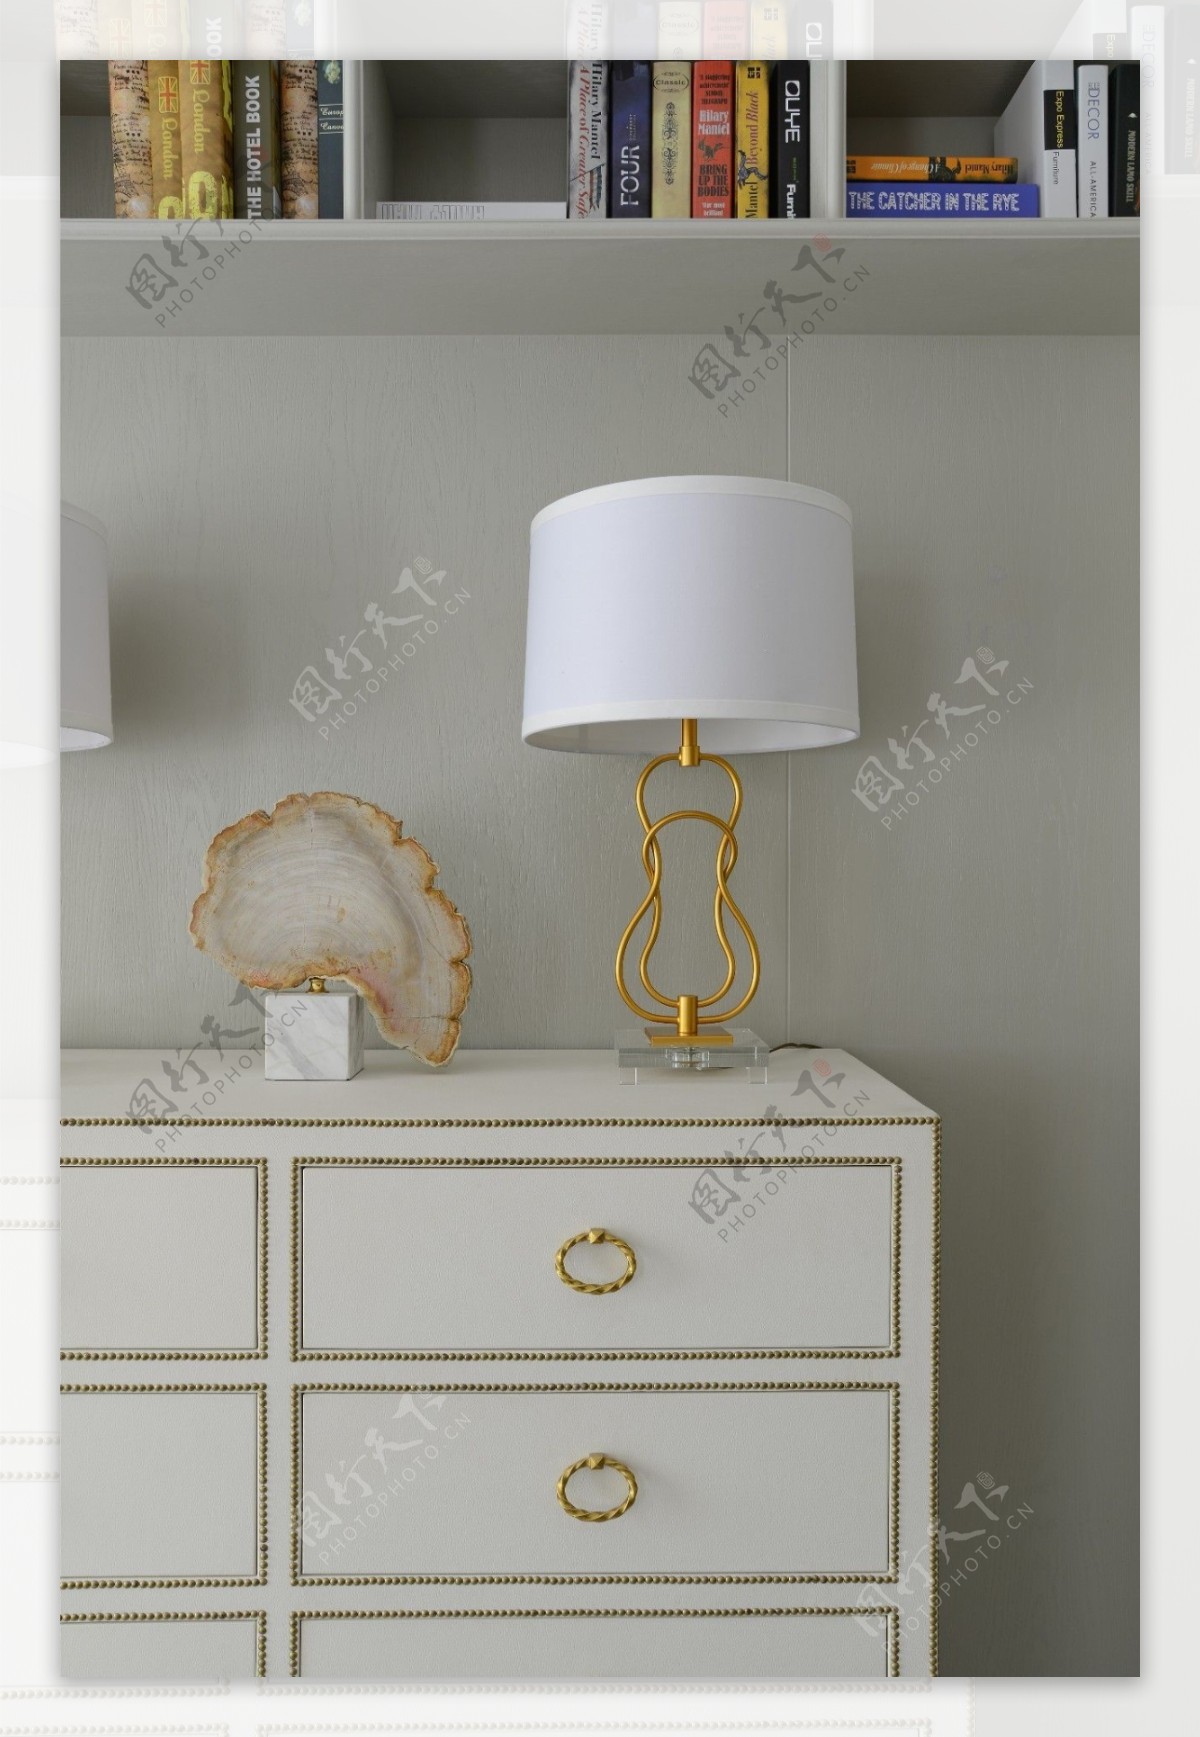 美式客厅白色时尚台灯设计图